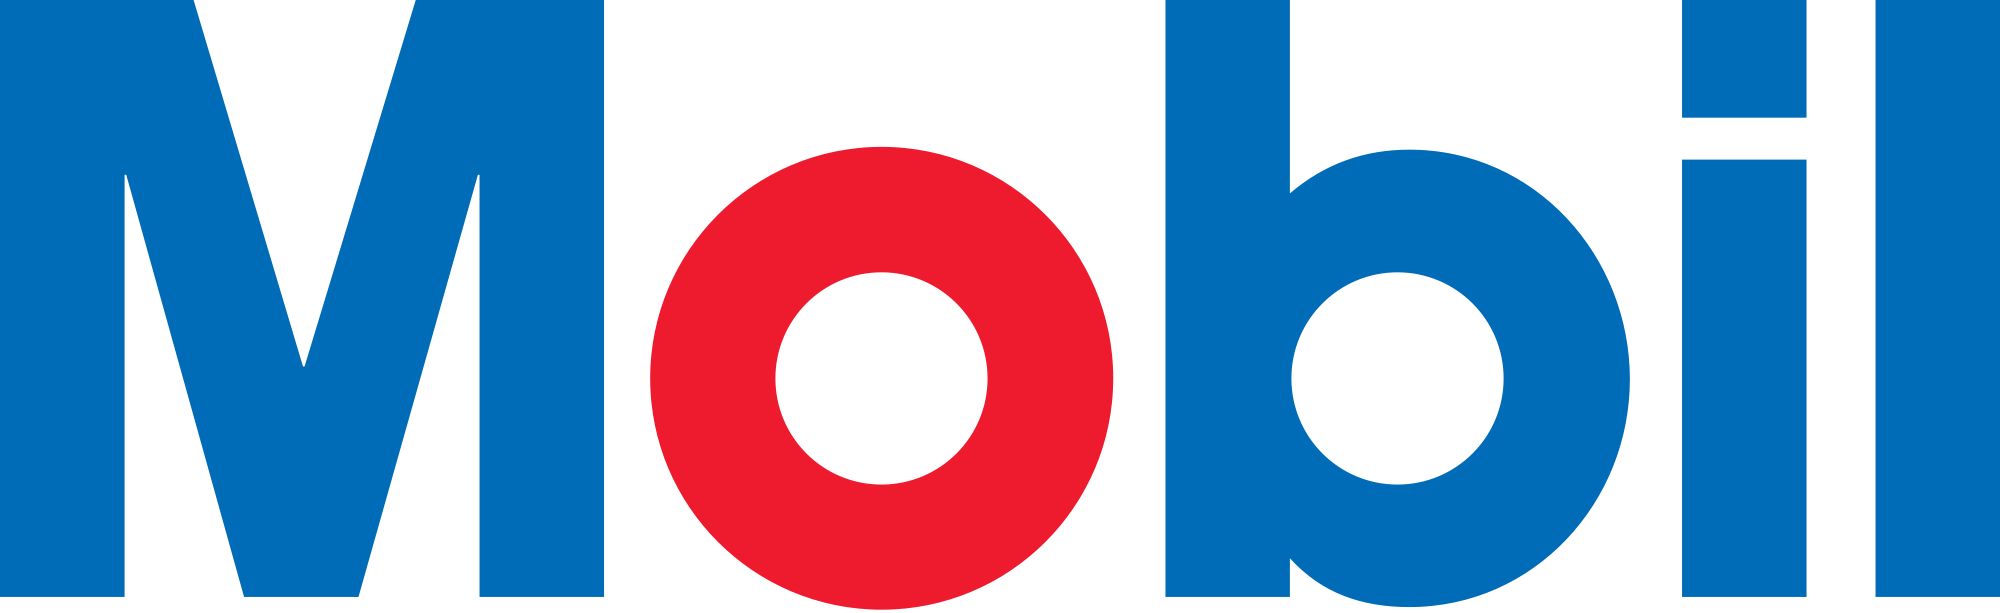 mobil-logo